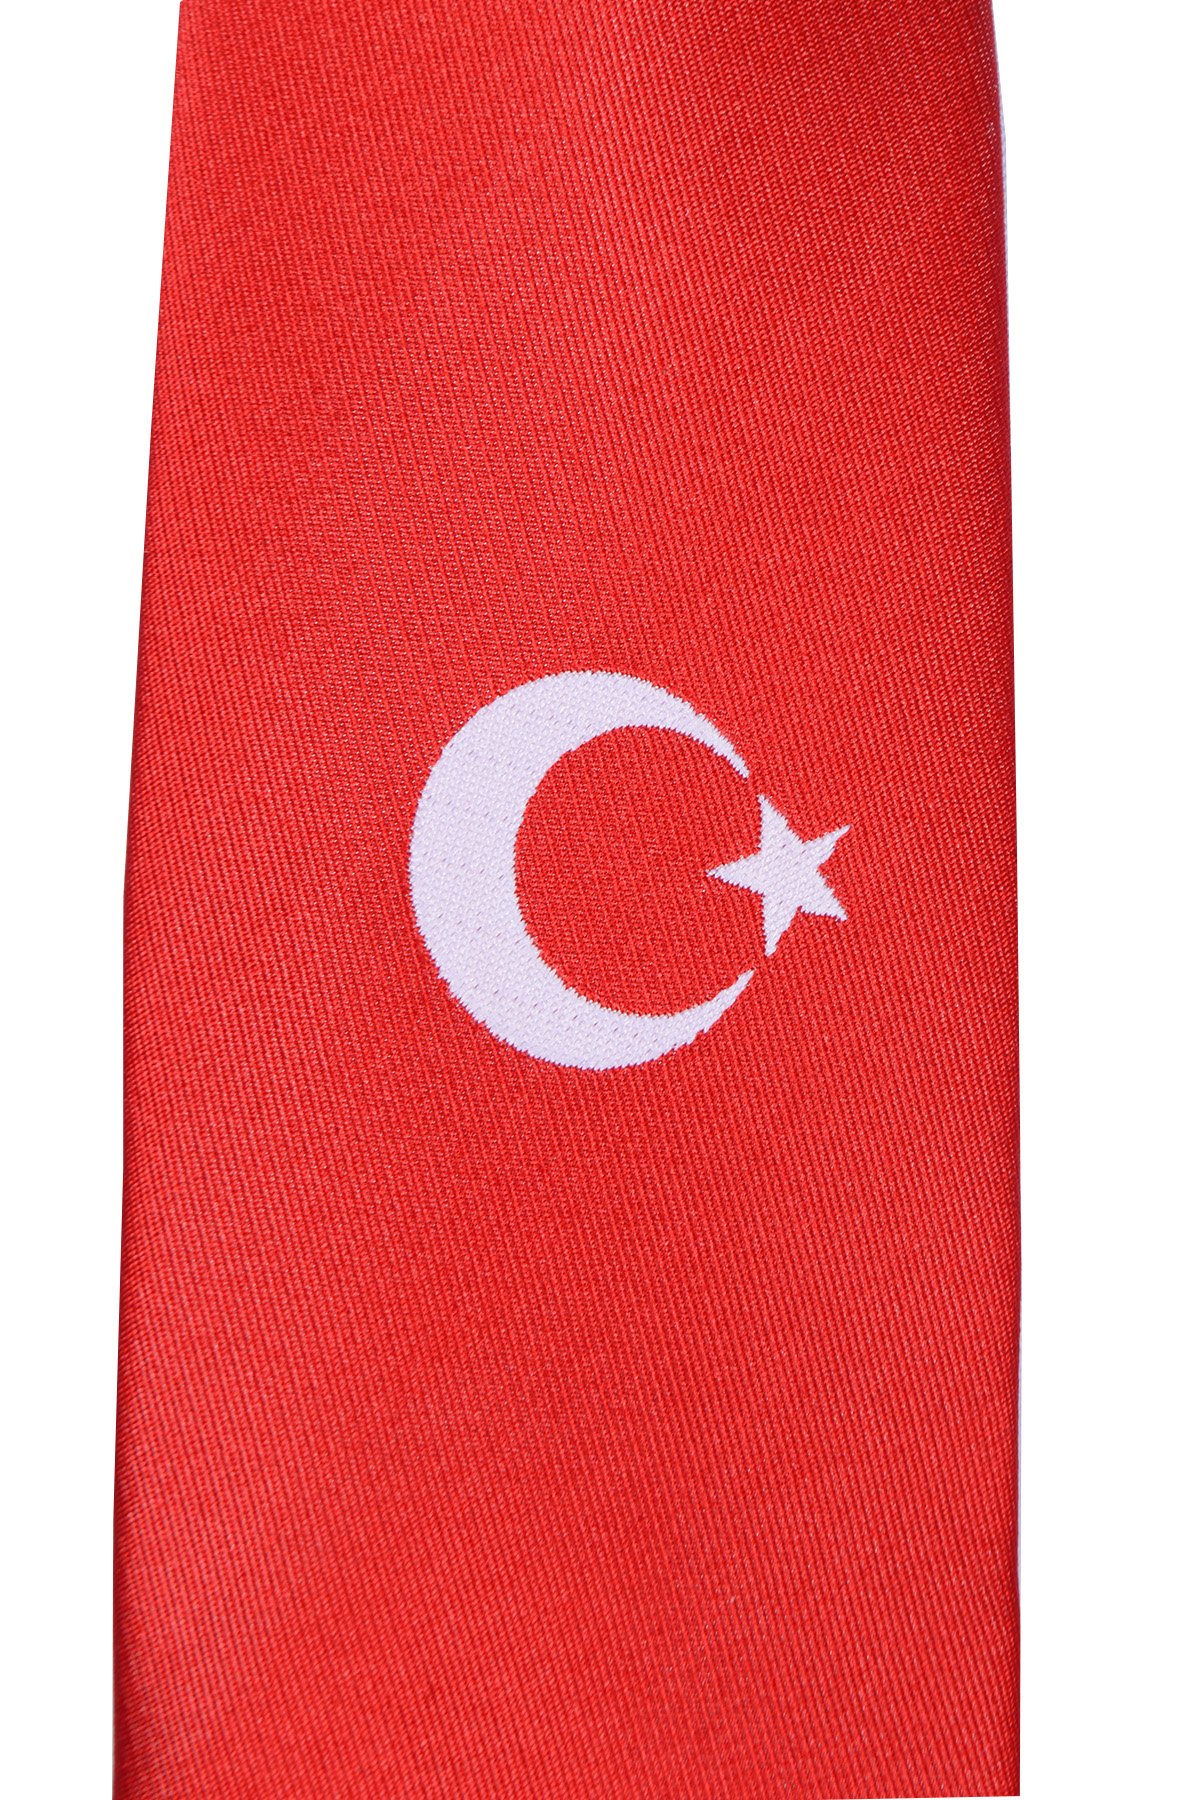 Türk Bayraklı Kravat